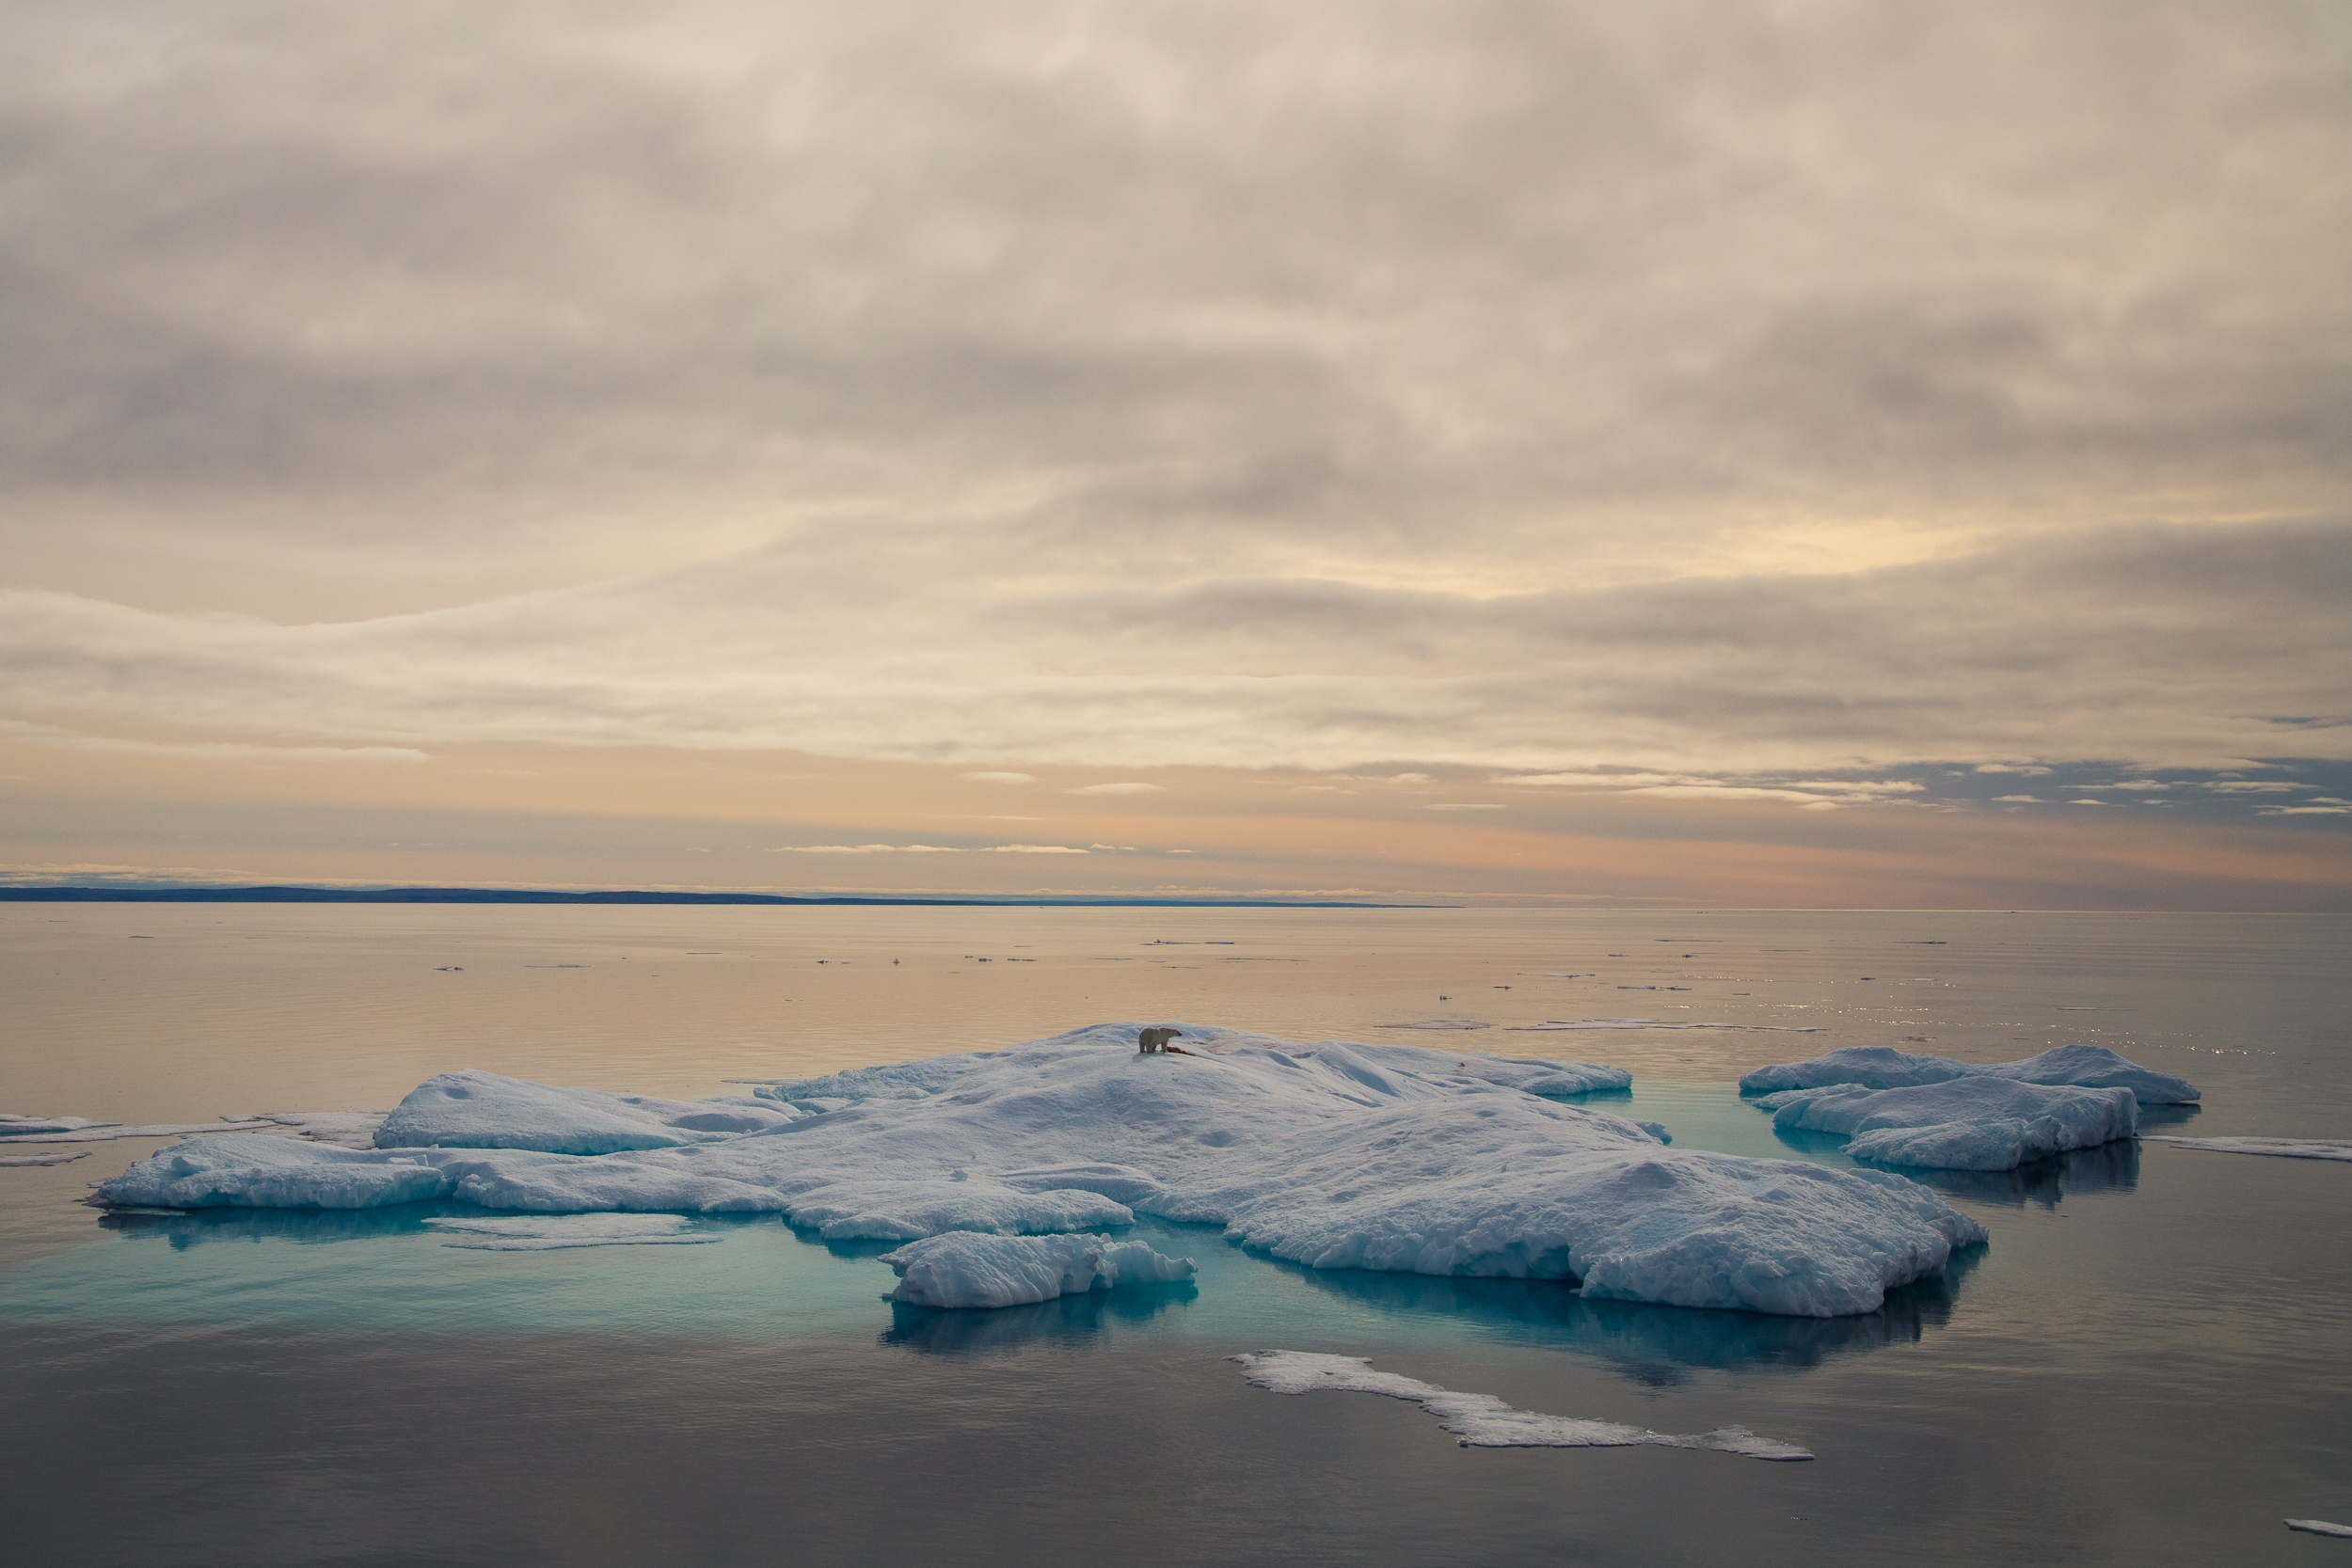  Polar Bear, Franklin Strait, NU. Canada 